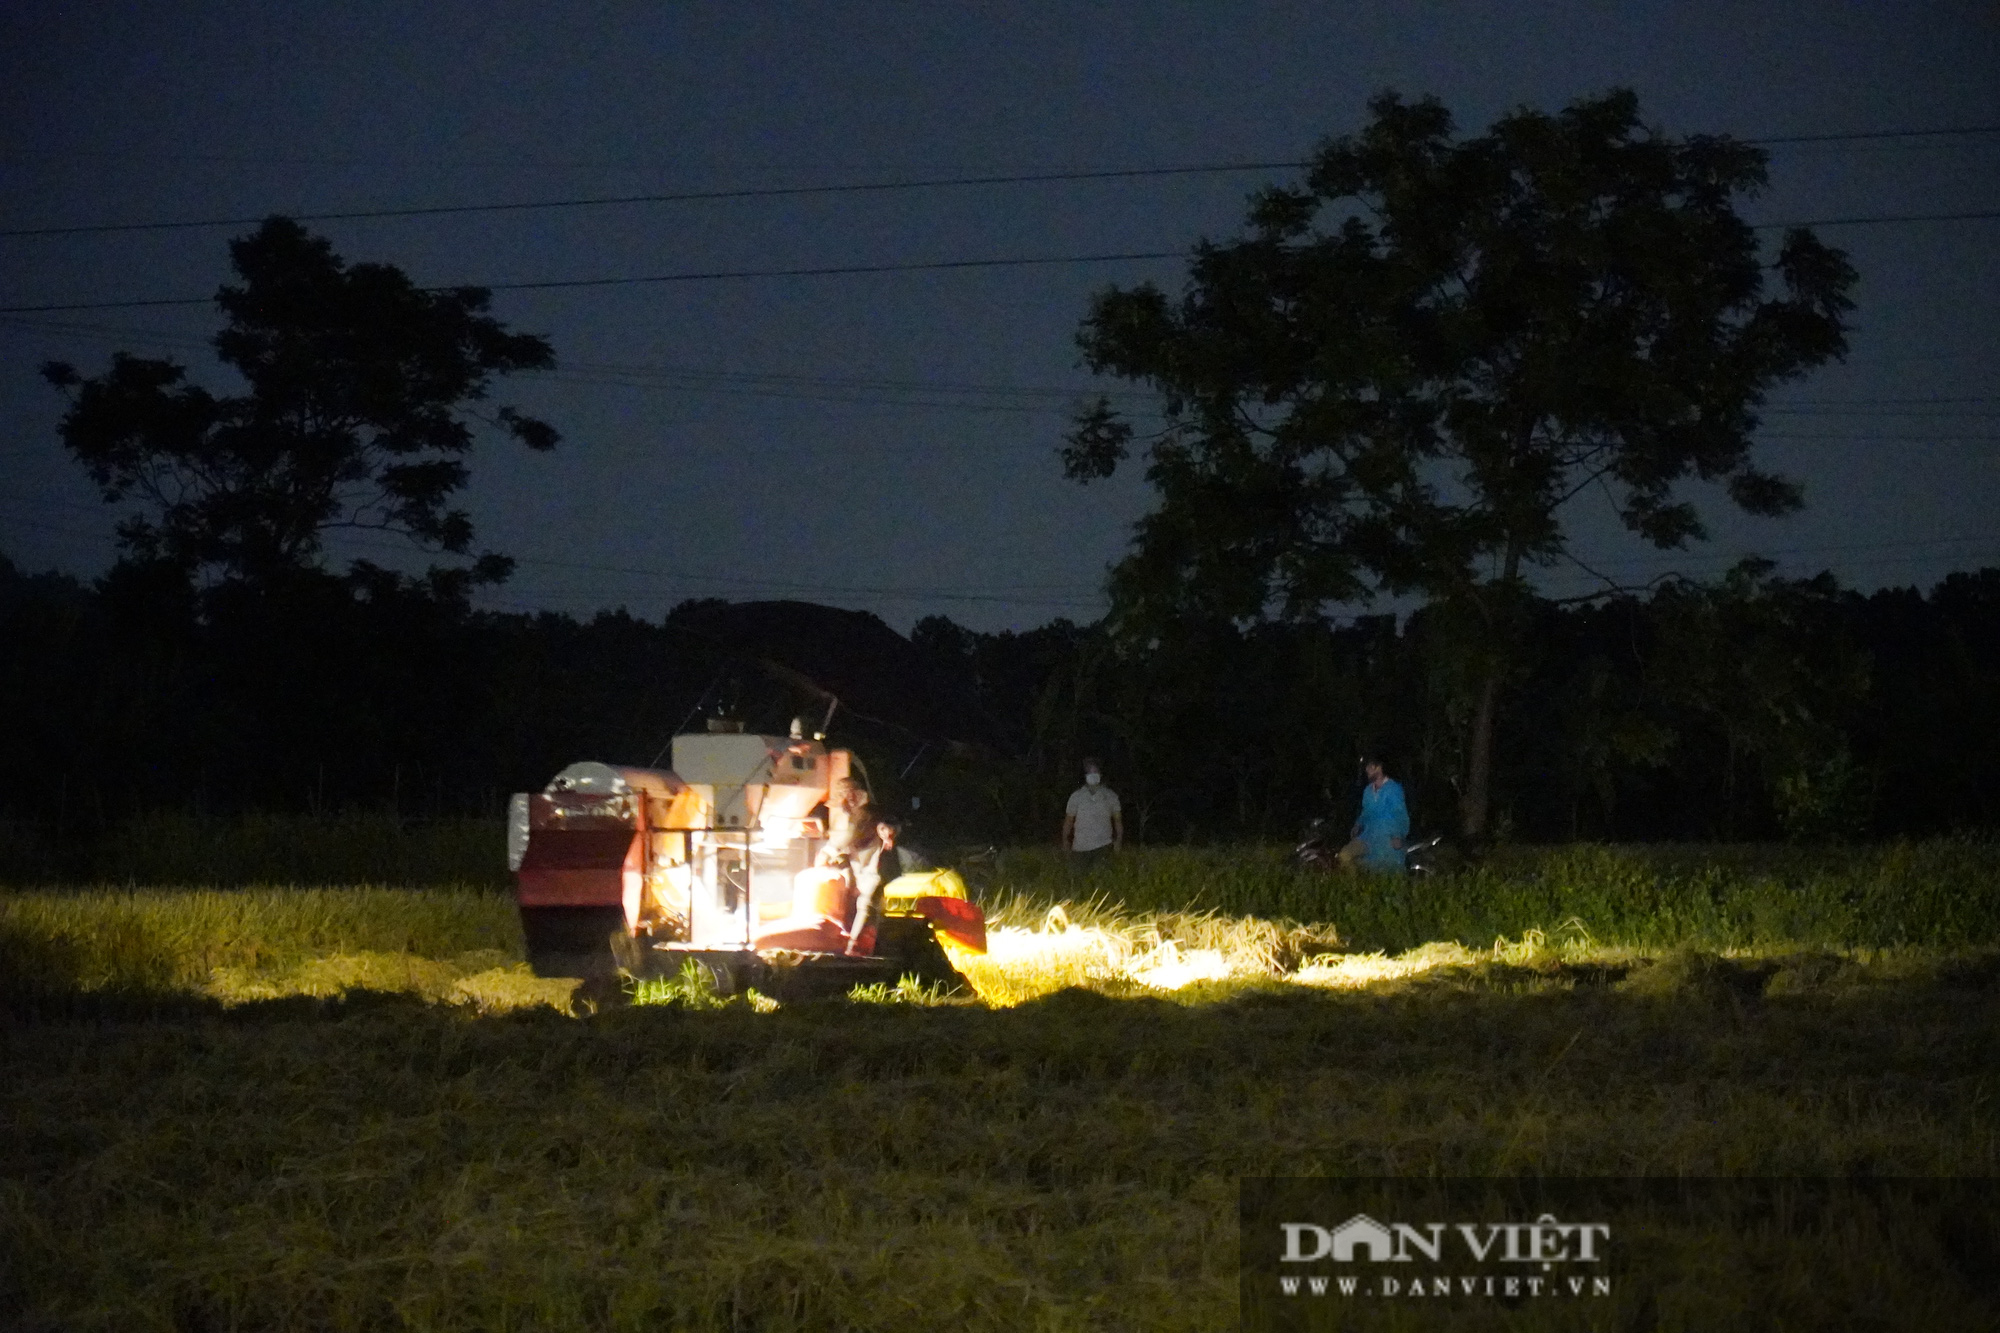 Bắc Ninh: Cận cảnh gắt lúa trong đêm giúp dân vùng tâm dịch Covid-19 Khắc Niệm - Ảnh 3.